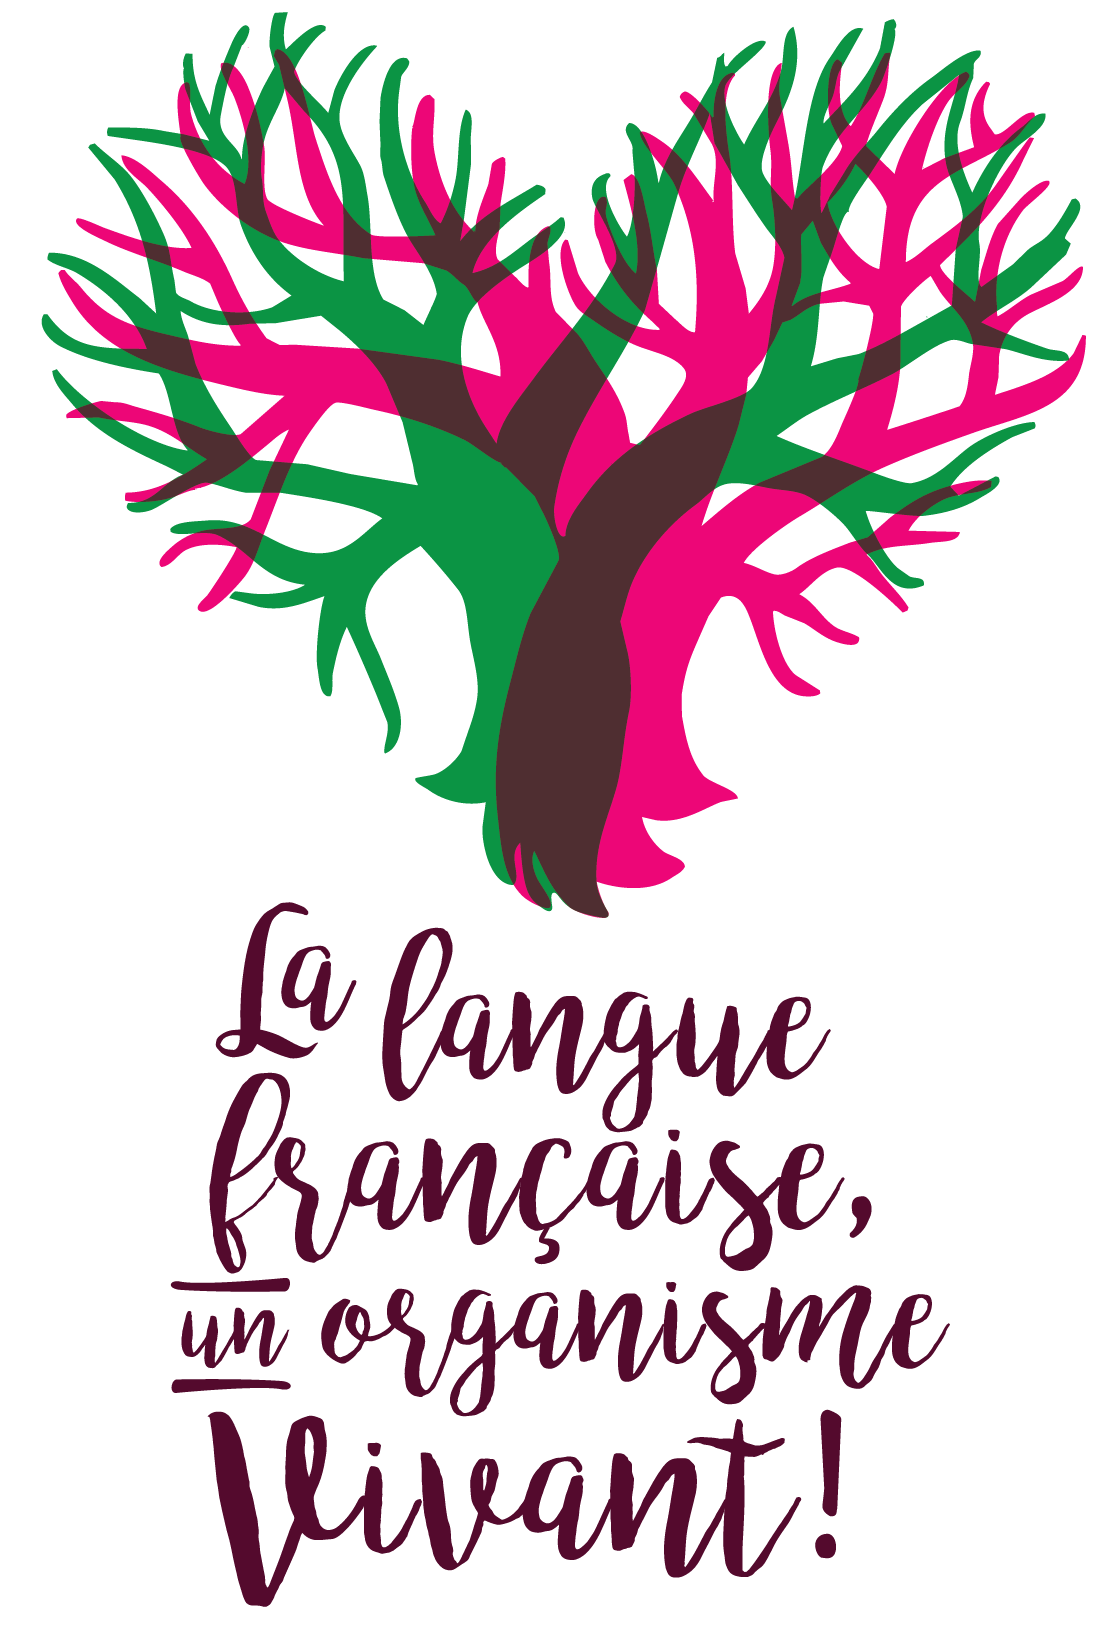 Congrès 2017 : La langue française, un organisme vivant!